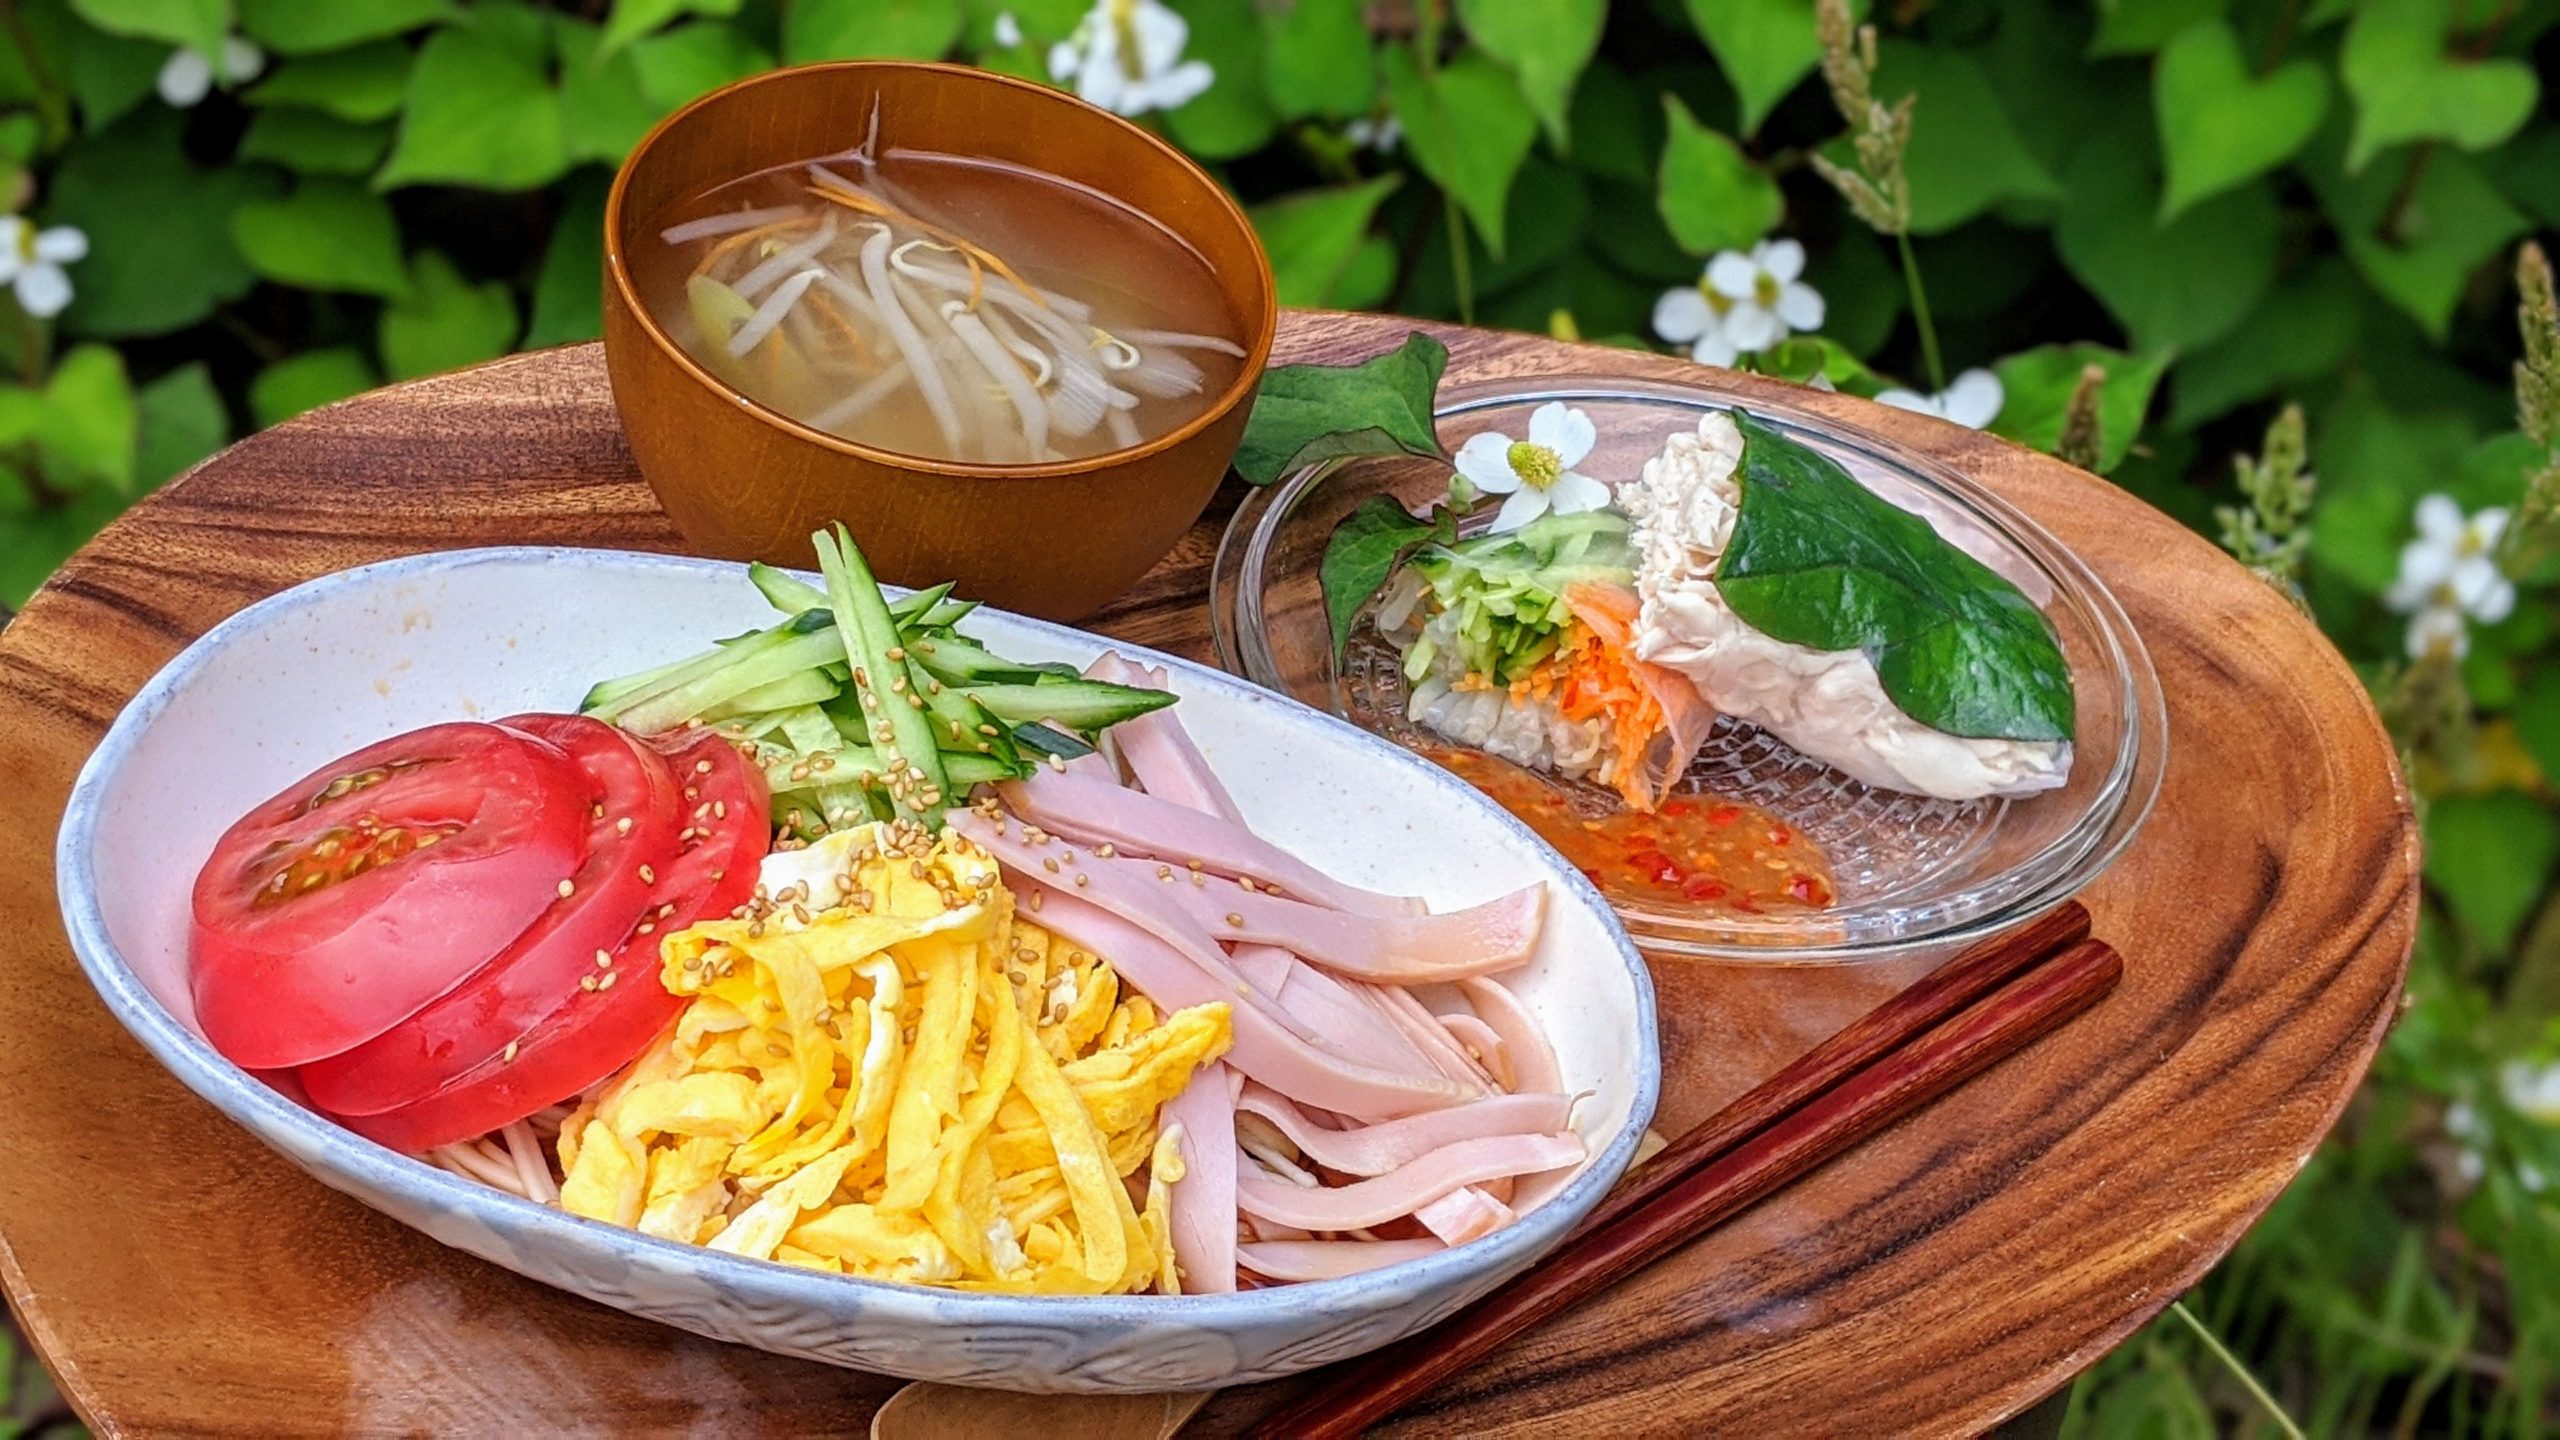 東京里山ごはん ドクダミの葉を使った美味しいレシピ 34自家製柿酢の冷やし中華風うどん 野草の生春巻き 東京の里山で暮らすブログ